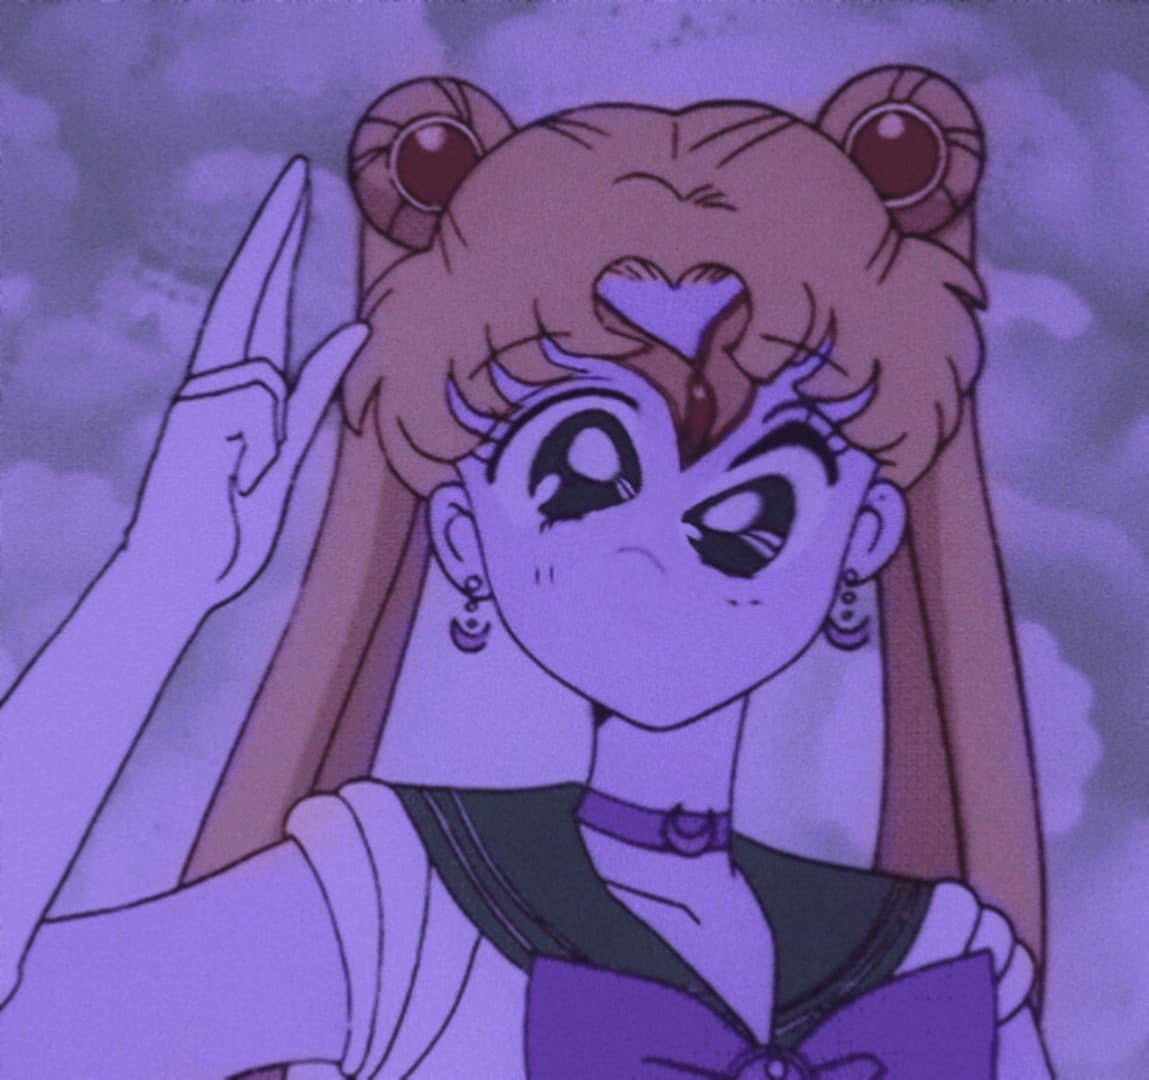 Mh, si forse dovrei dormire invece di drogare Sailor Moon